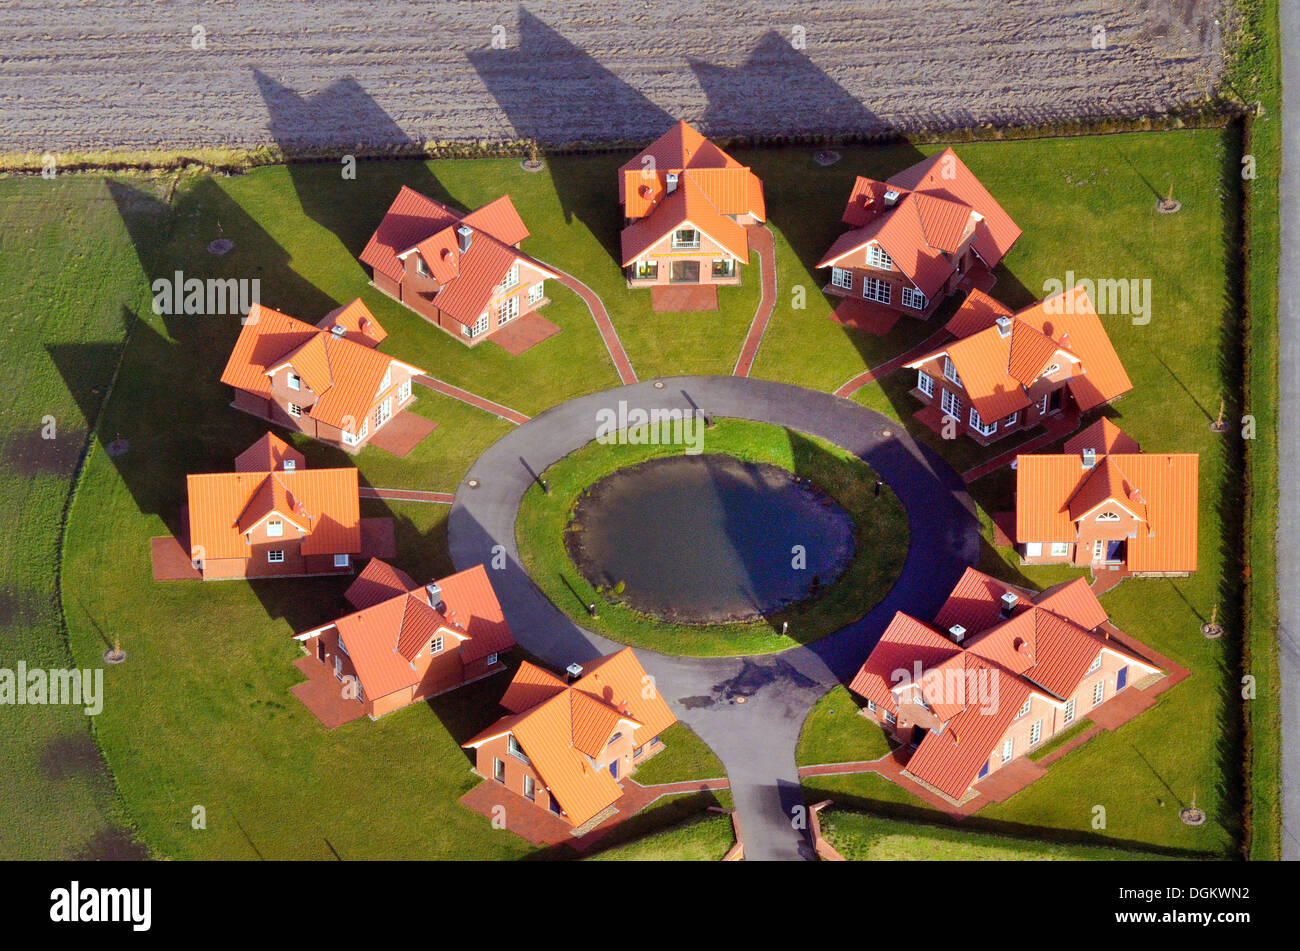 Vista aérea, rundling moderno, una forma del pueblo circular con idénticas cottages, construido en un círculo, cerca de Wilhelmshaven Foto de stock